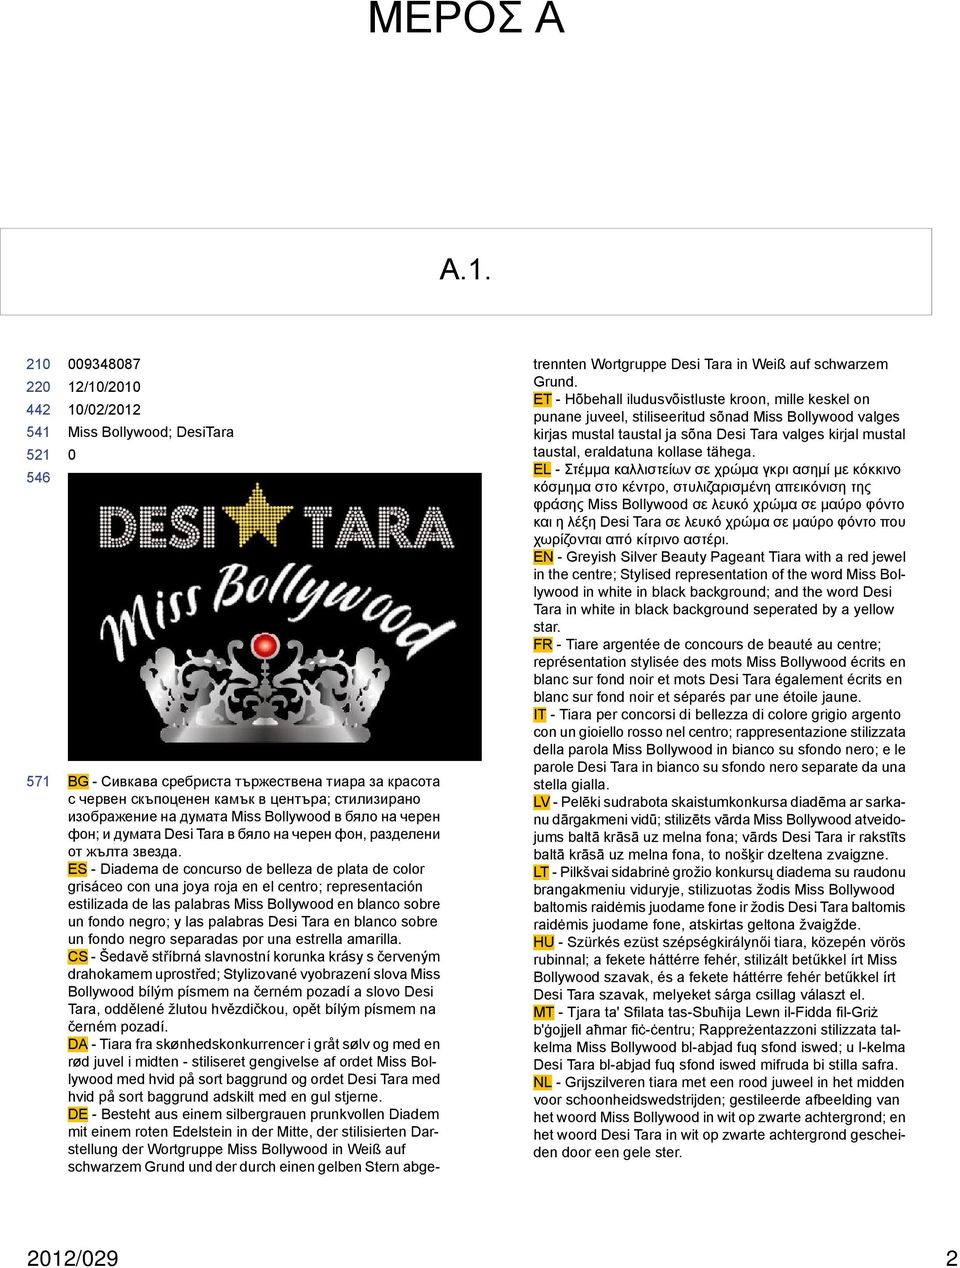 фон; и думата Desi Tara в бяло на черен фон, разделени от жълта звезда.